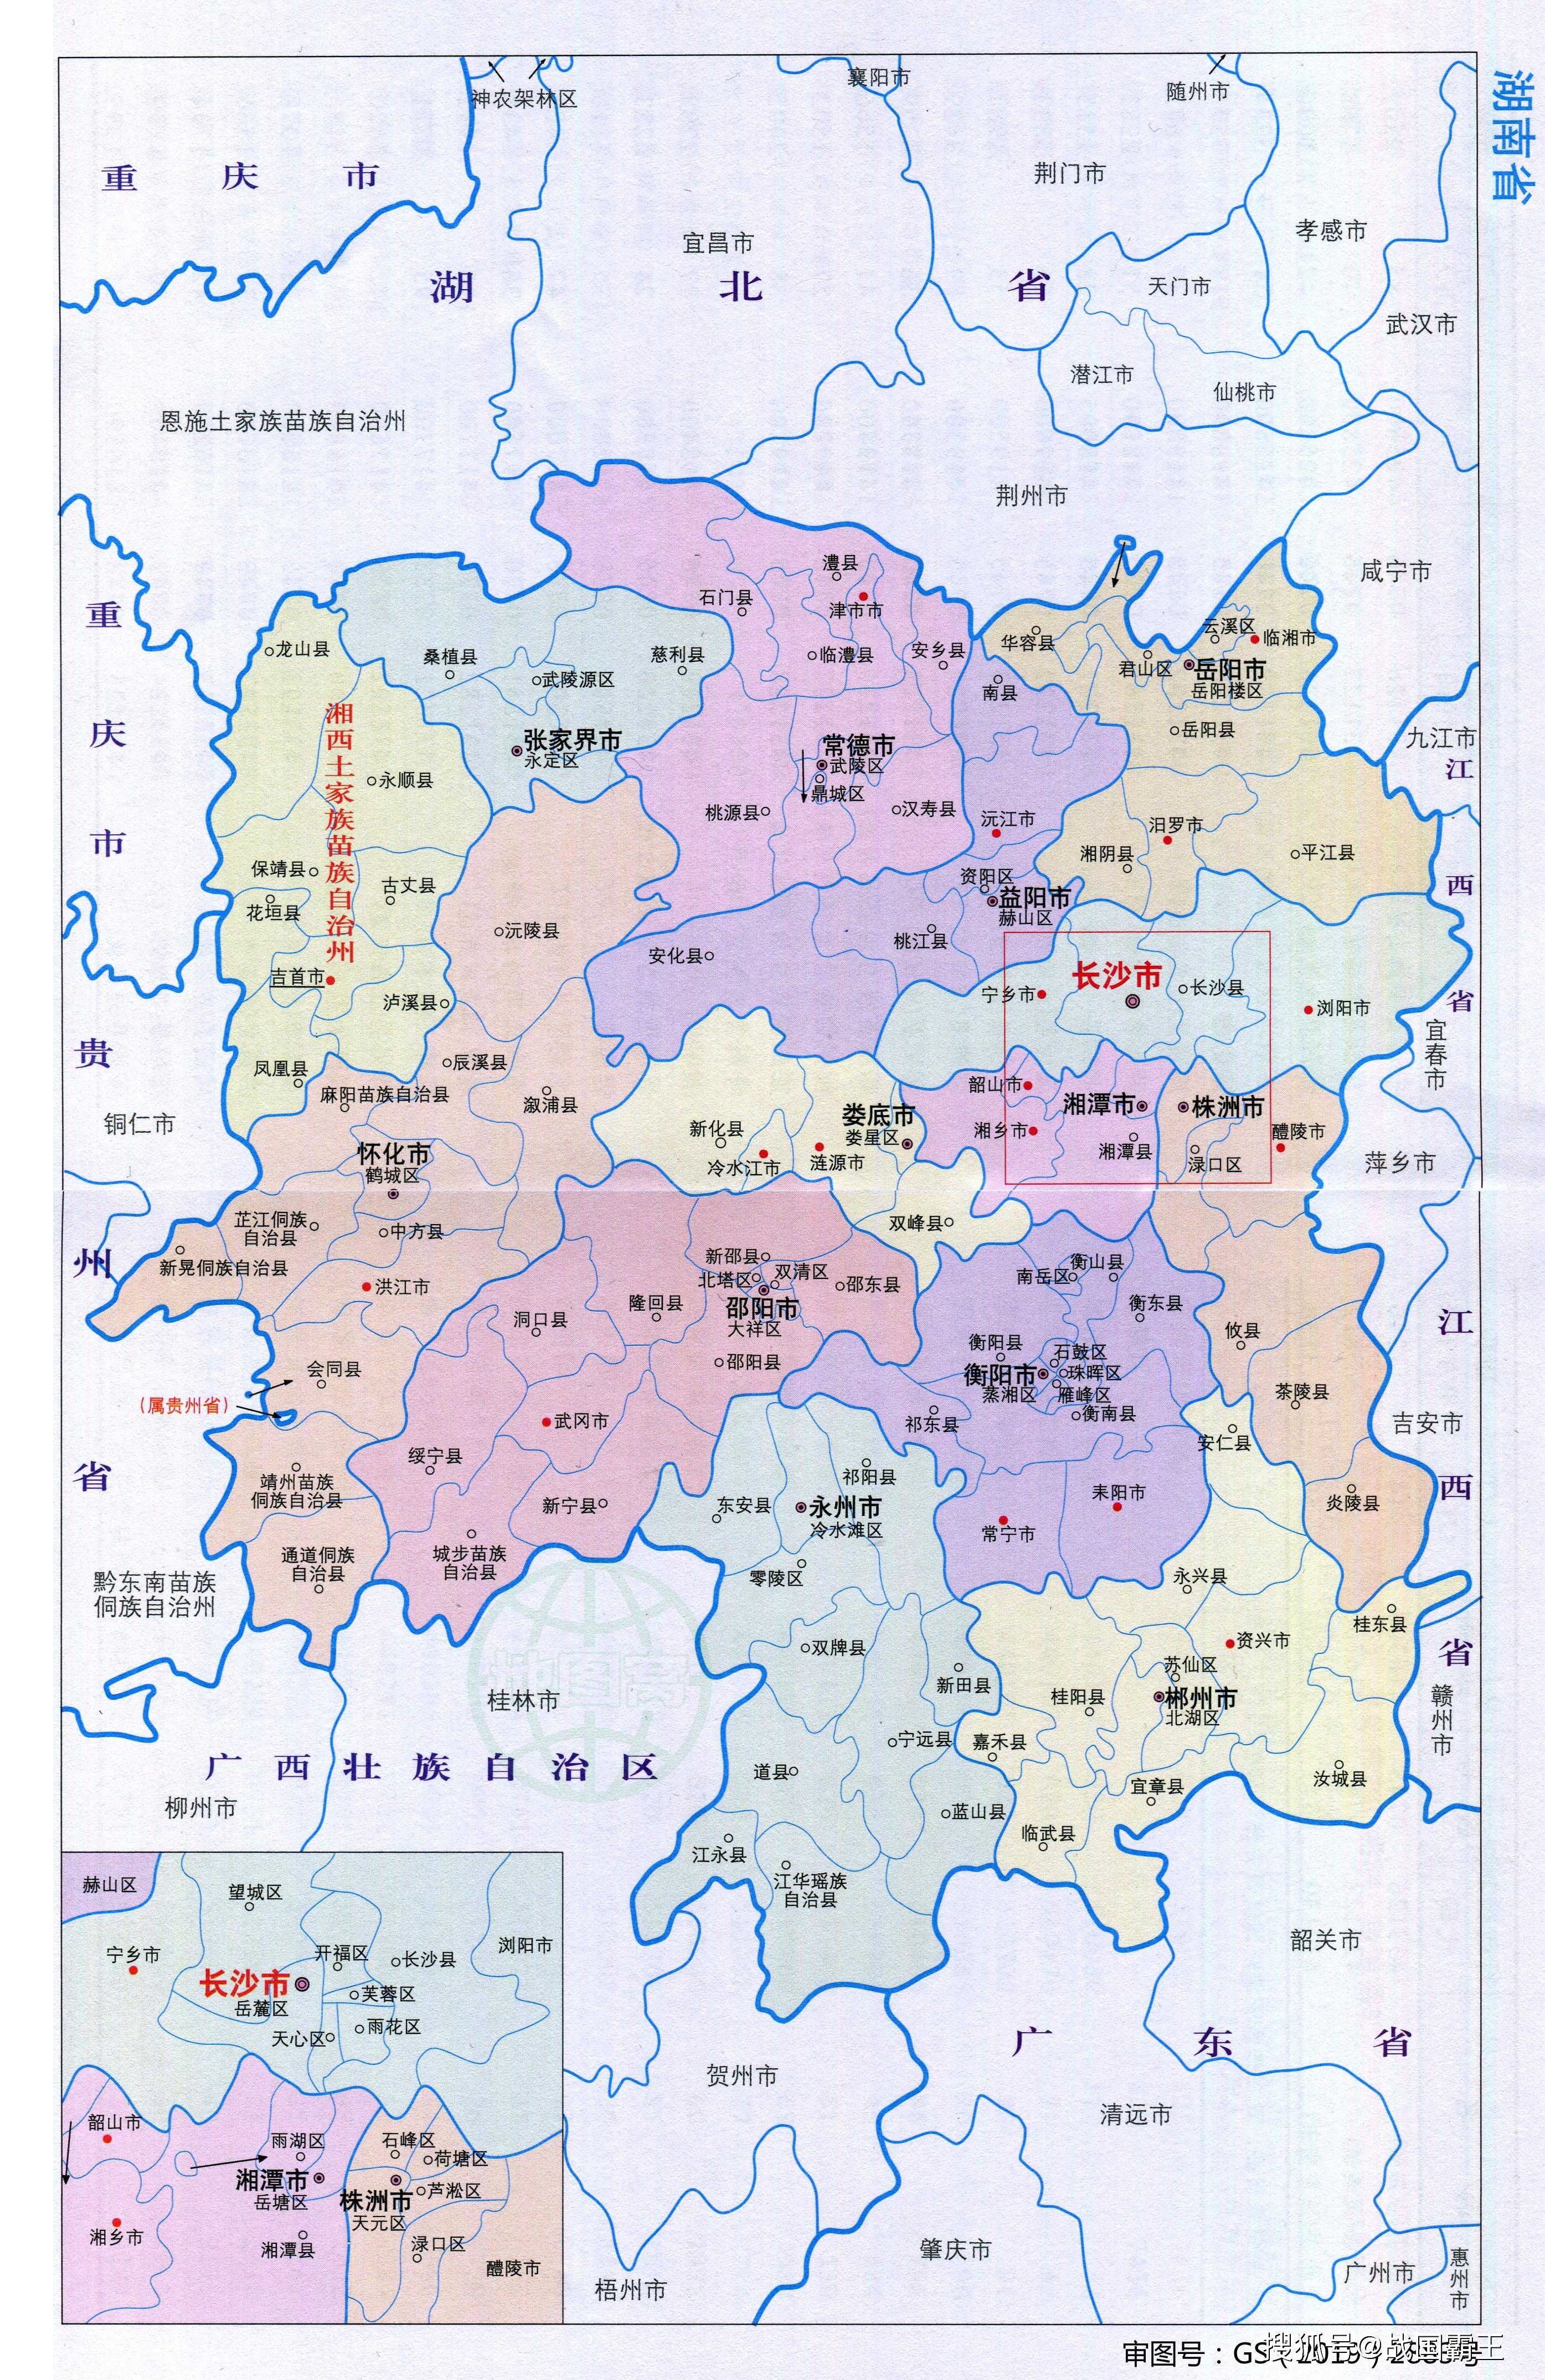 省会长沙市,其他的地级行政区划是株洲市,湘潭市,衡阳